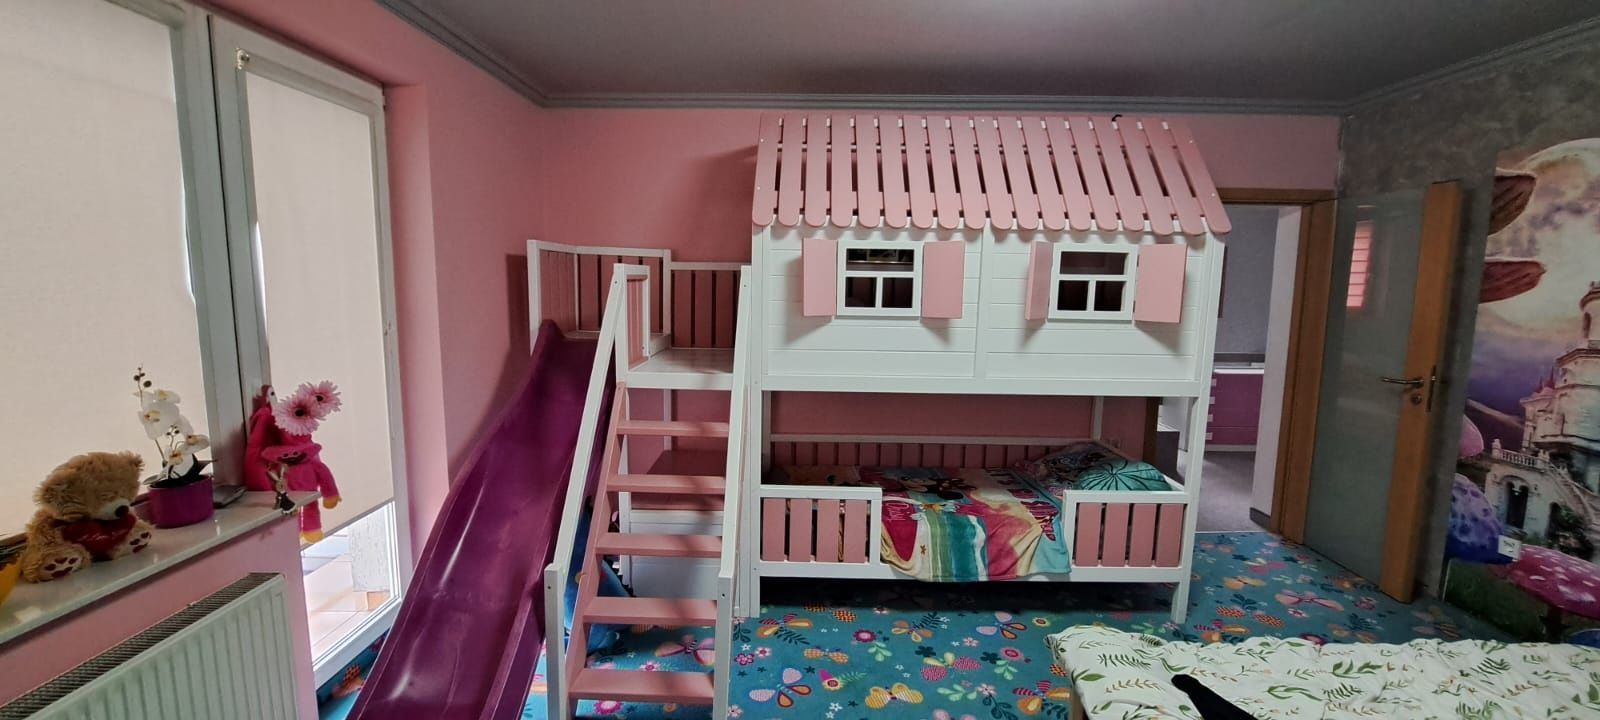 Łóżko piętrowe domek dla dzieci łóżeczko dzieciece XL RATY